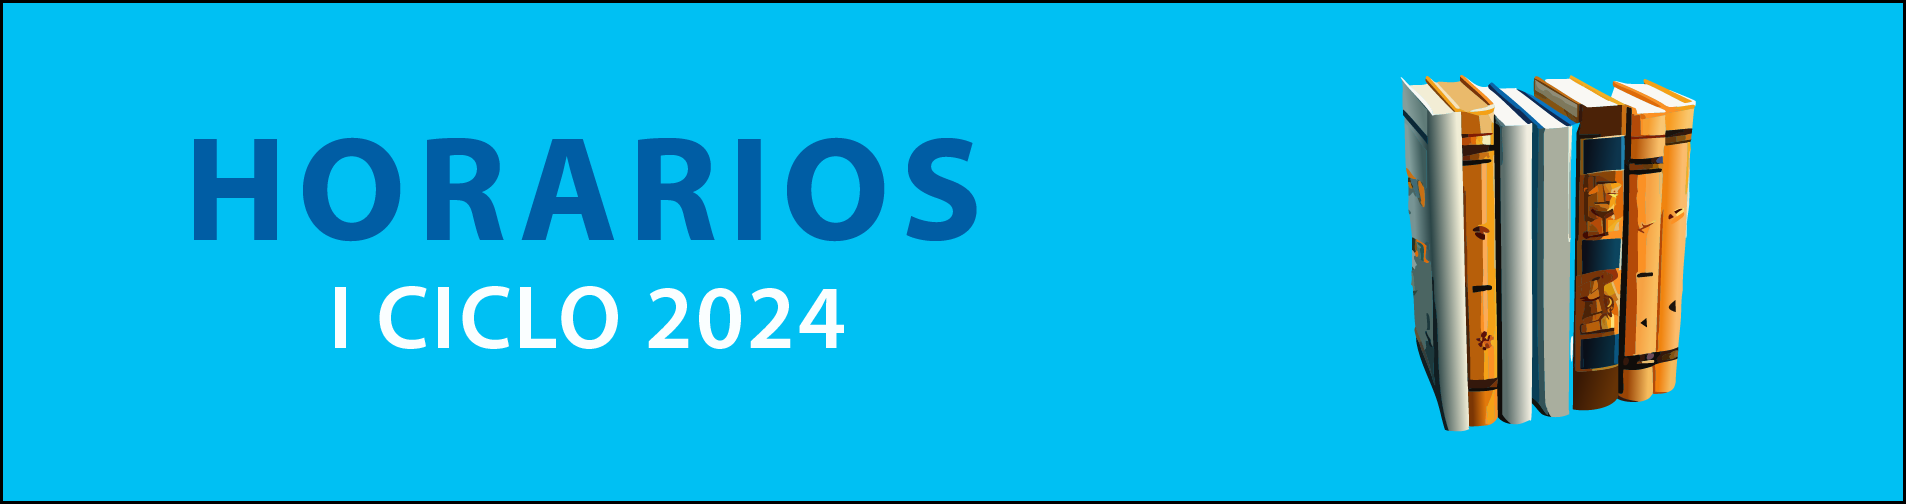 HORARIOS I CICLO 2024